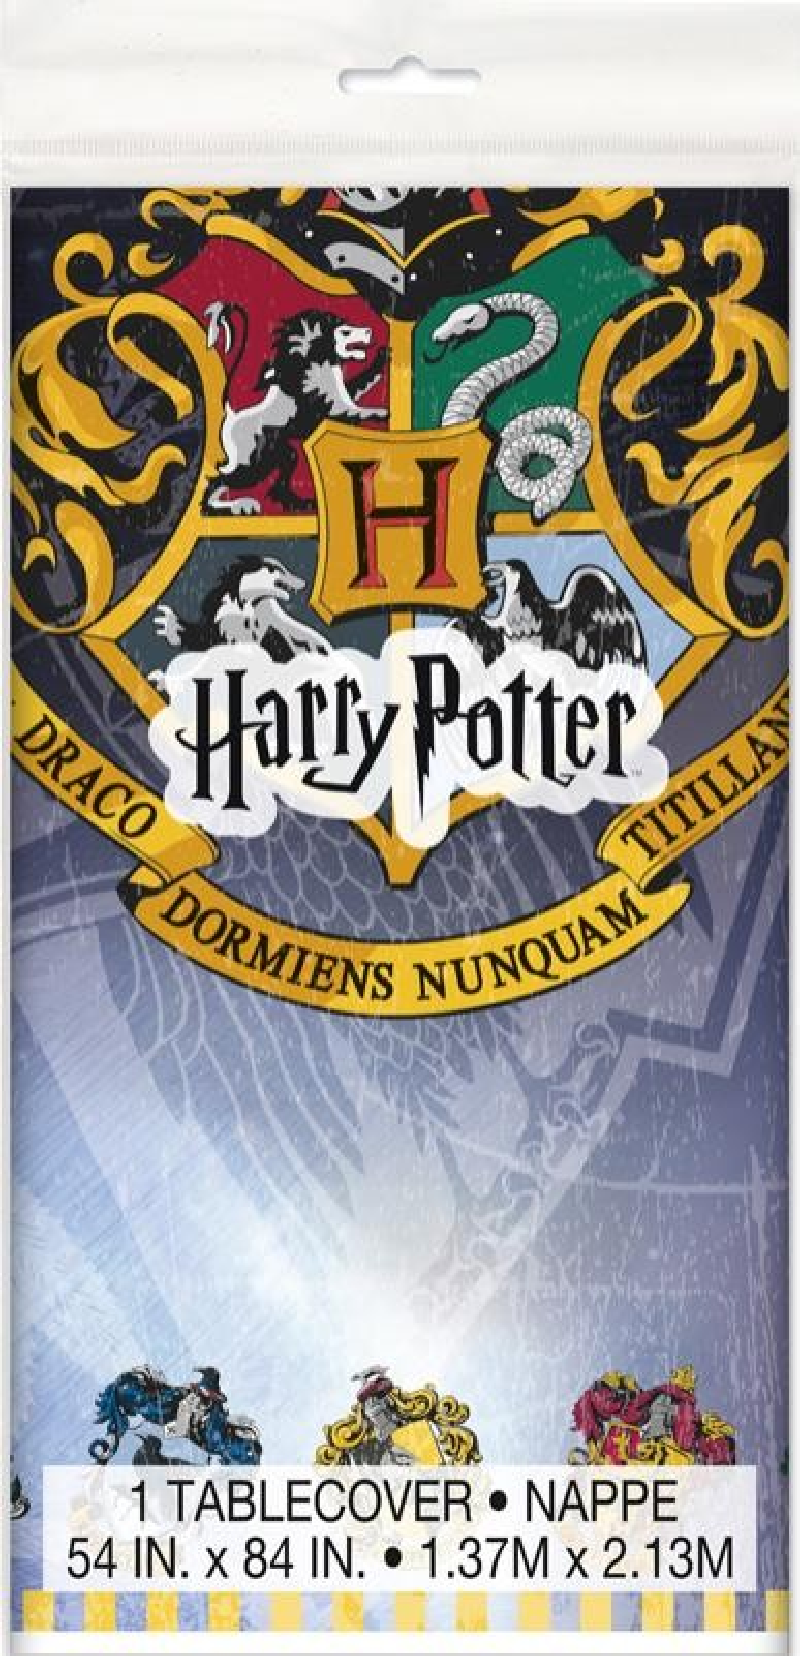 Nappe Harry Potter Wizarding World pour l'anniversaire de votre enfant -  Annikids